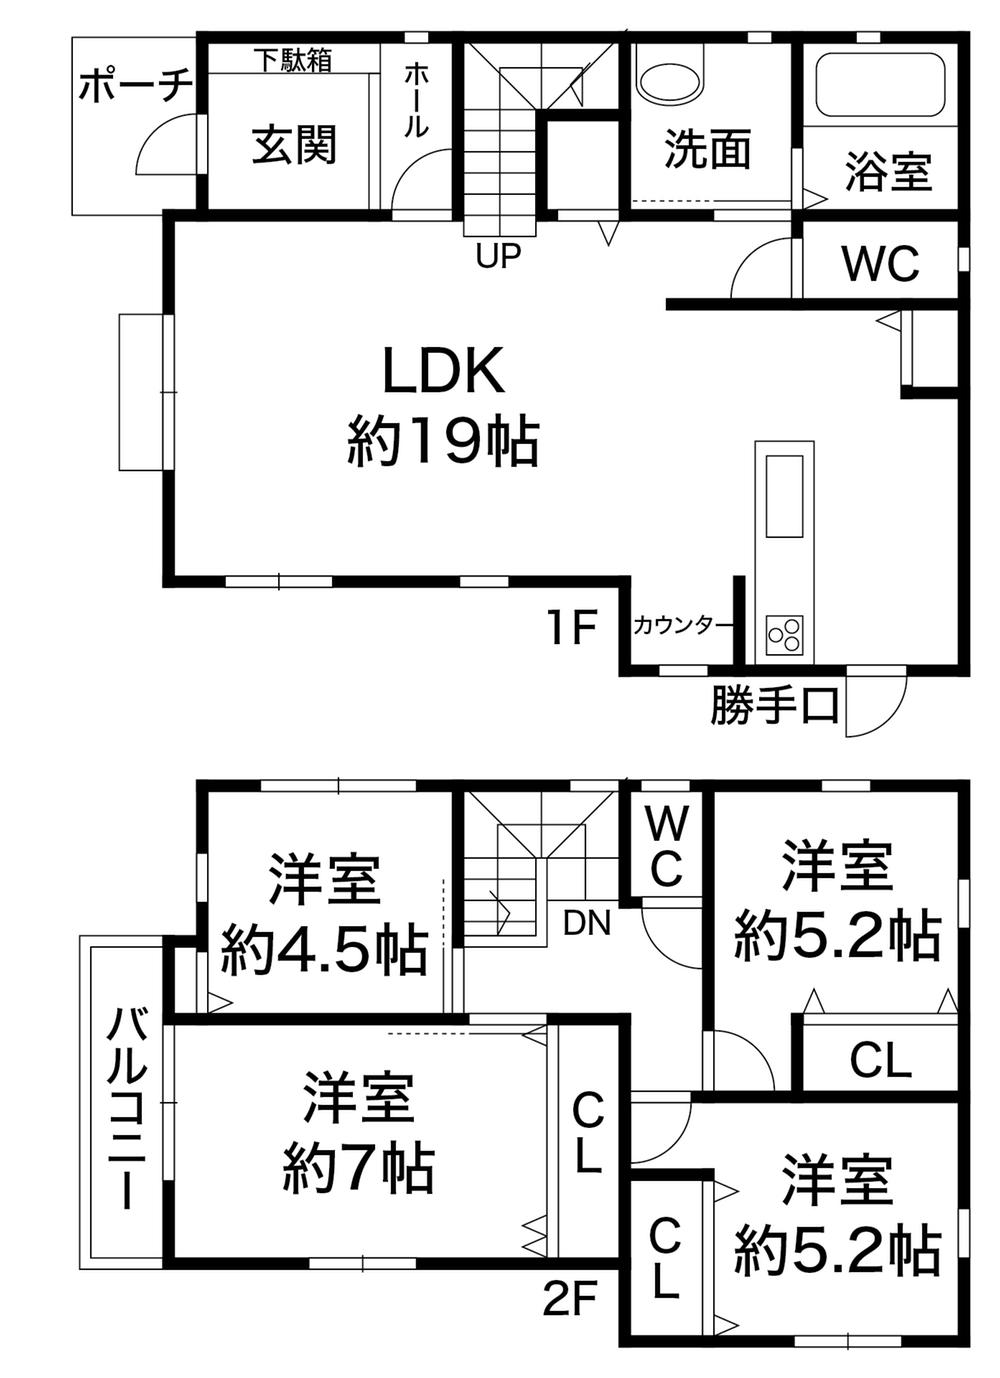 Floor plan. 28.8 million yen, 4LDK, Land area 114.33 sq m , Building area 99.36 sq m